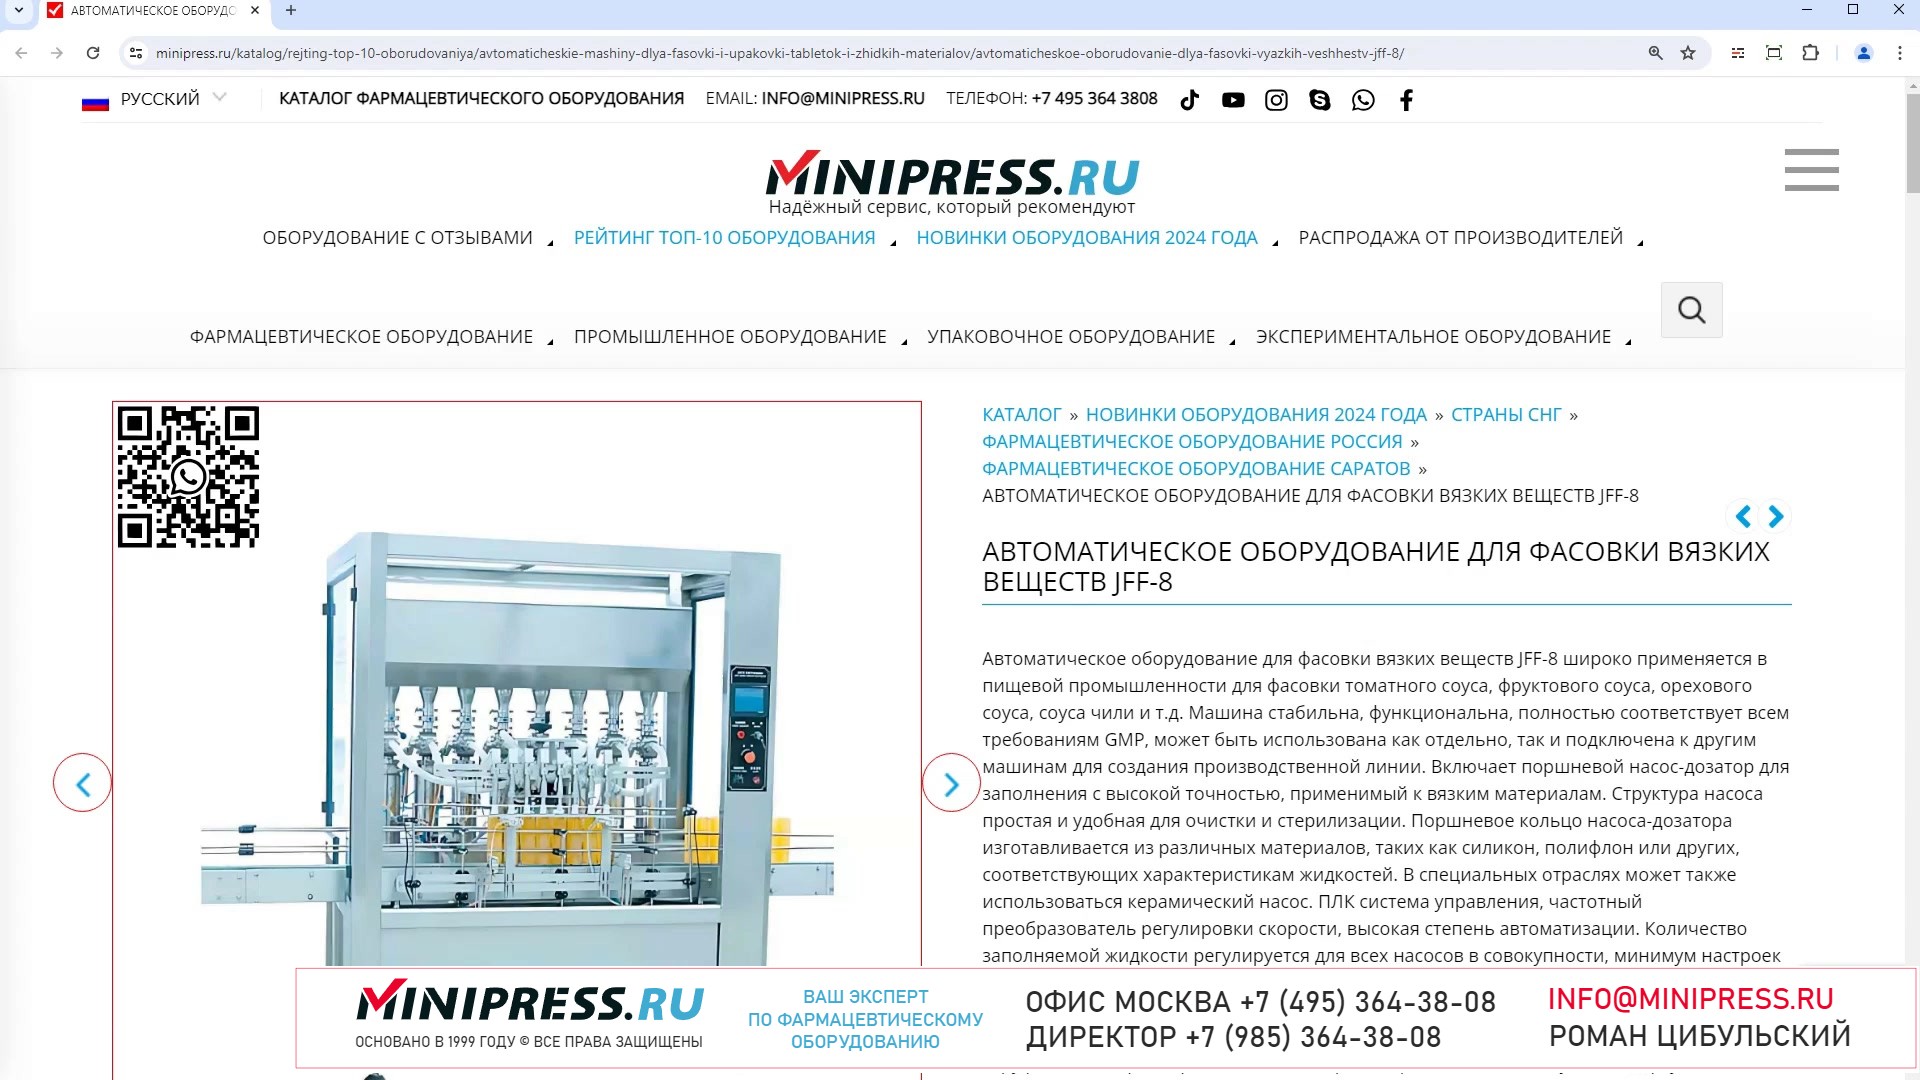 Minipress.ru Автоматическое оборудование для фасовки вязких веществ JFF-8